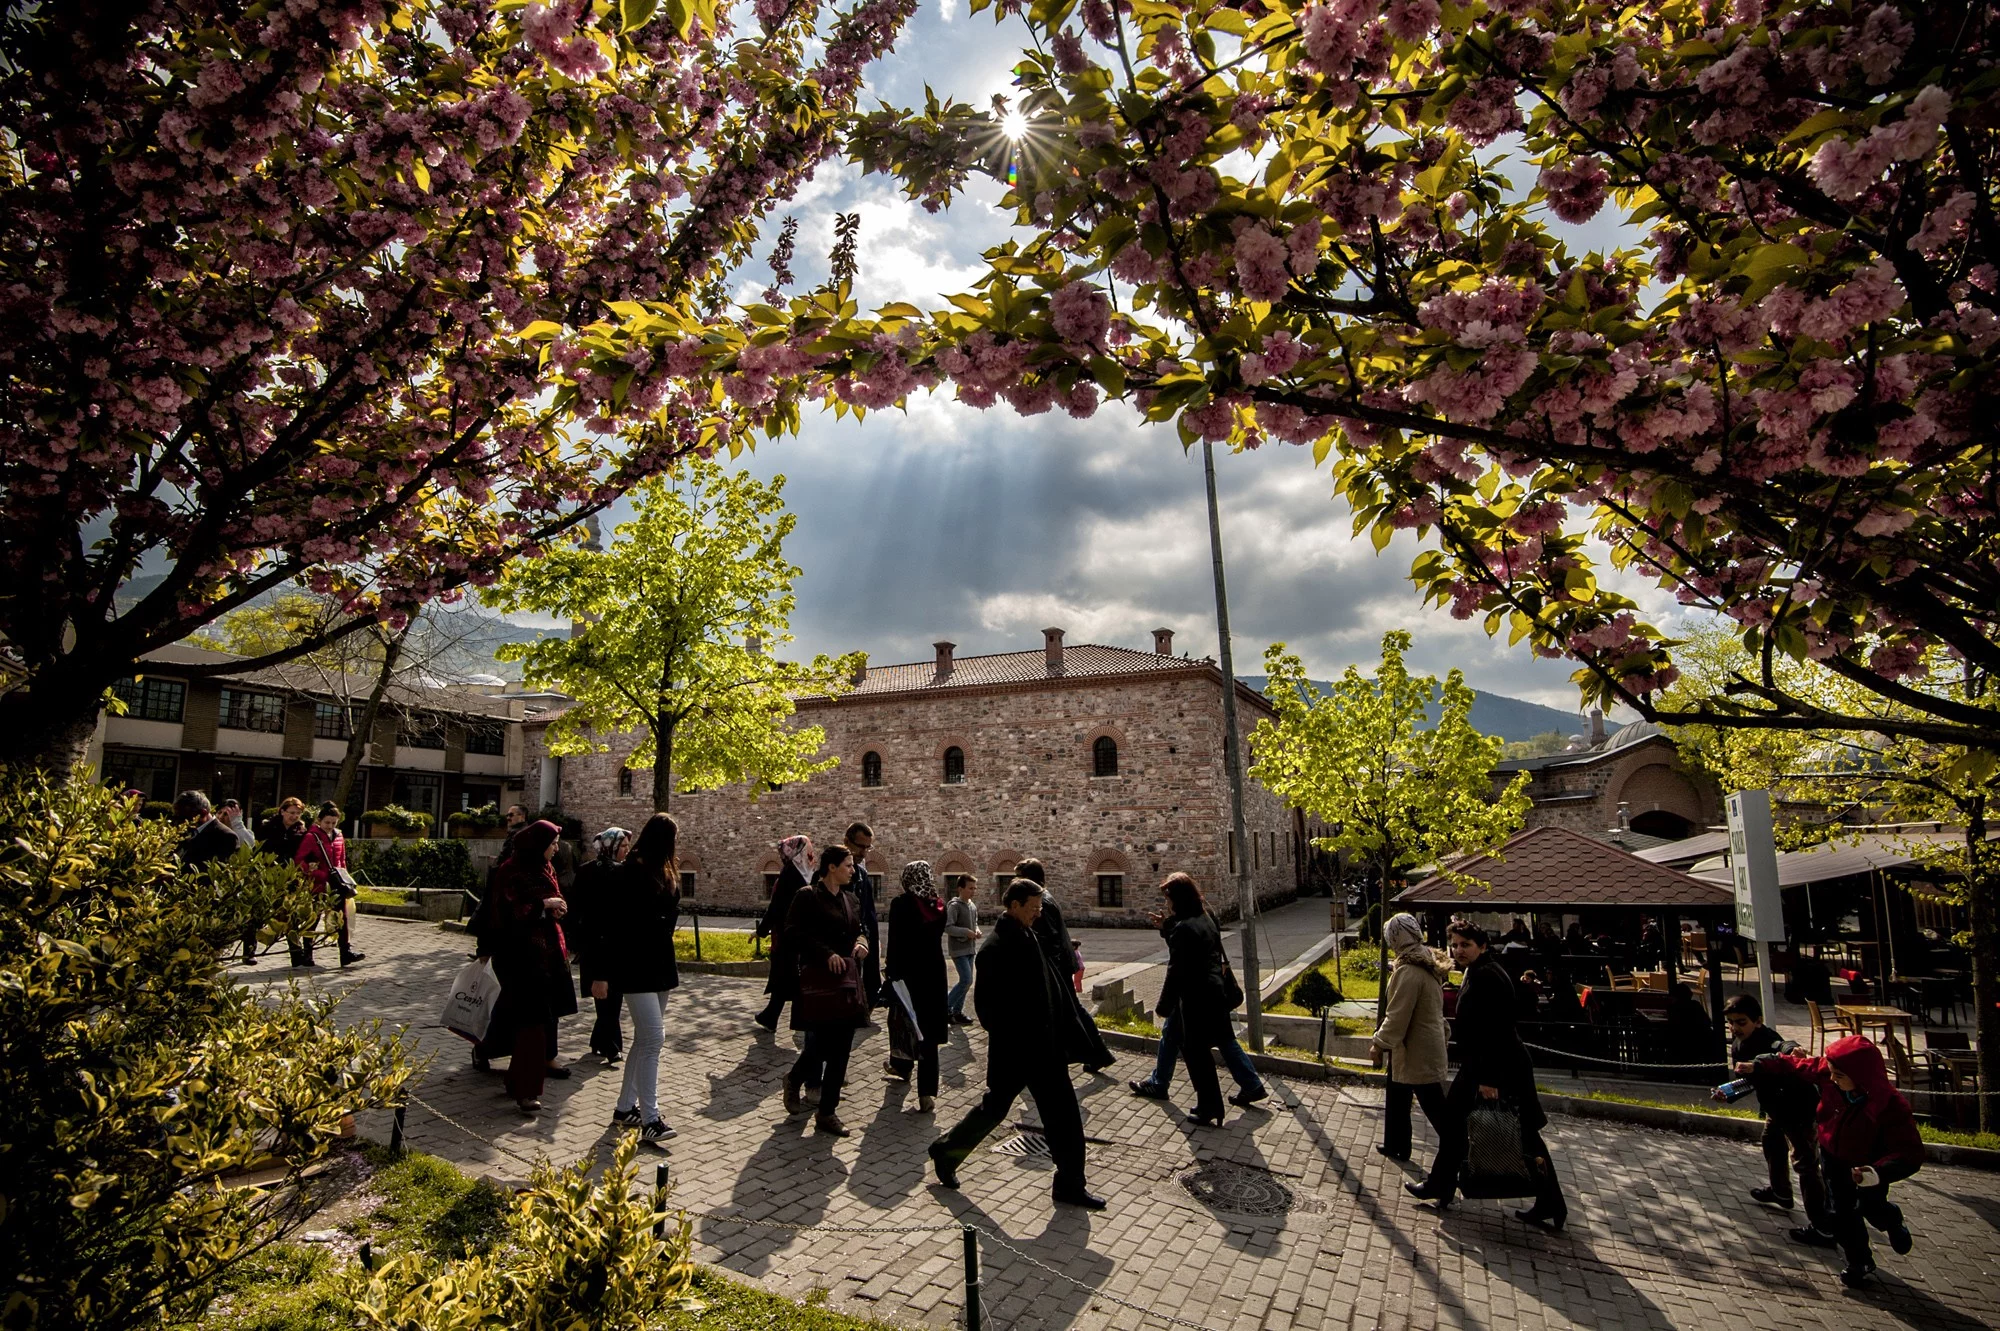 Bursa’nın baharı fotoğraflara yansıyor